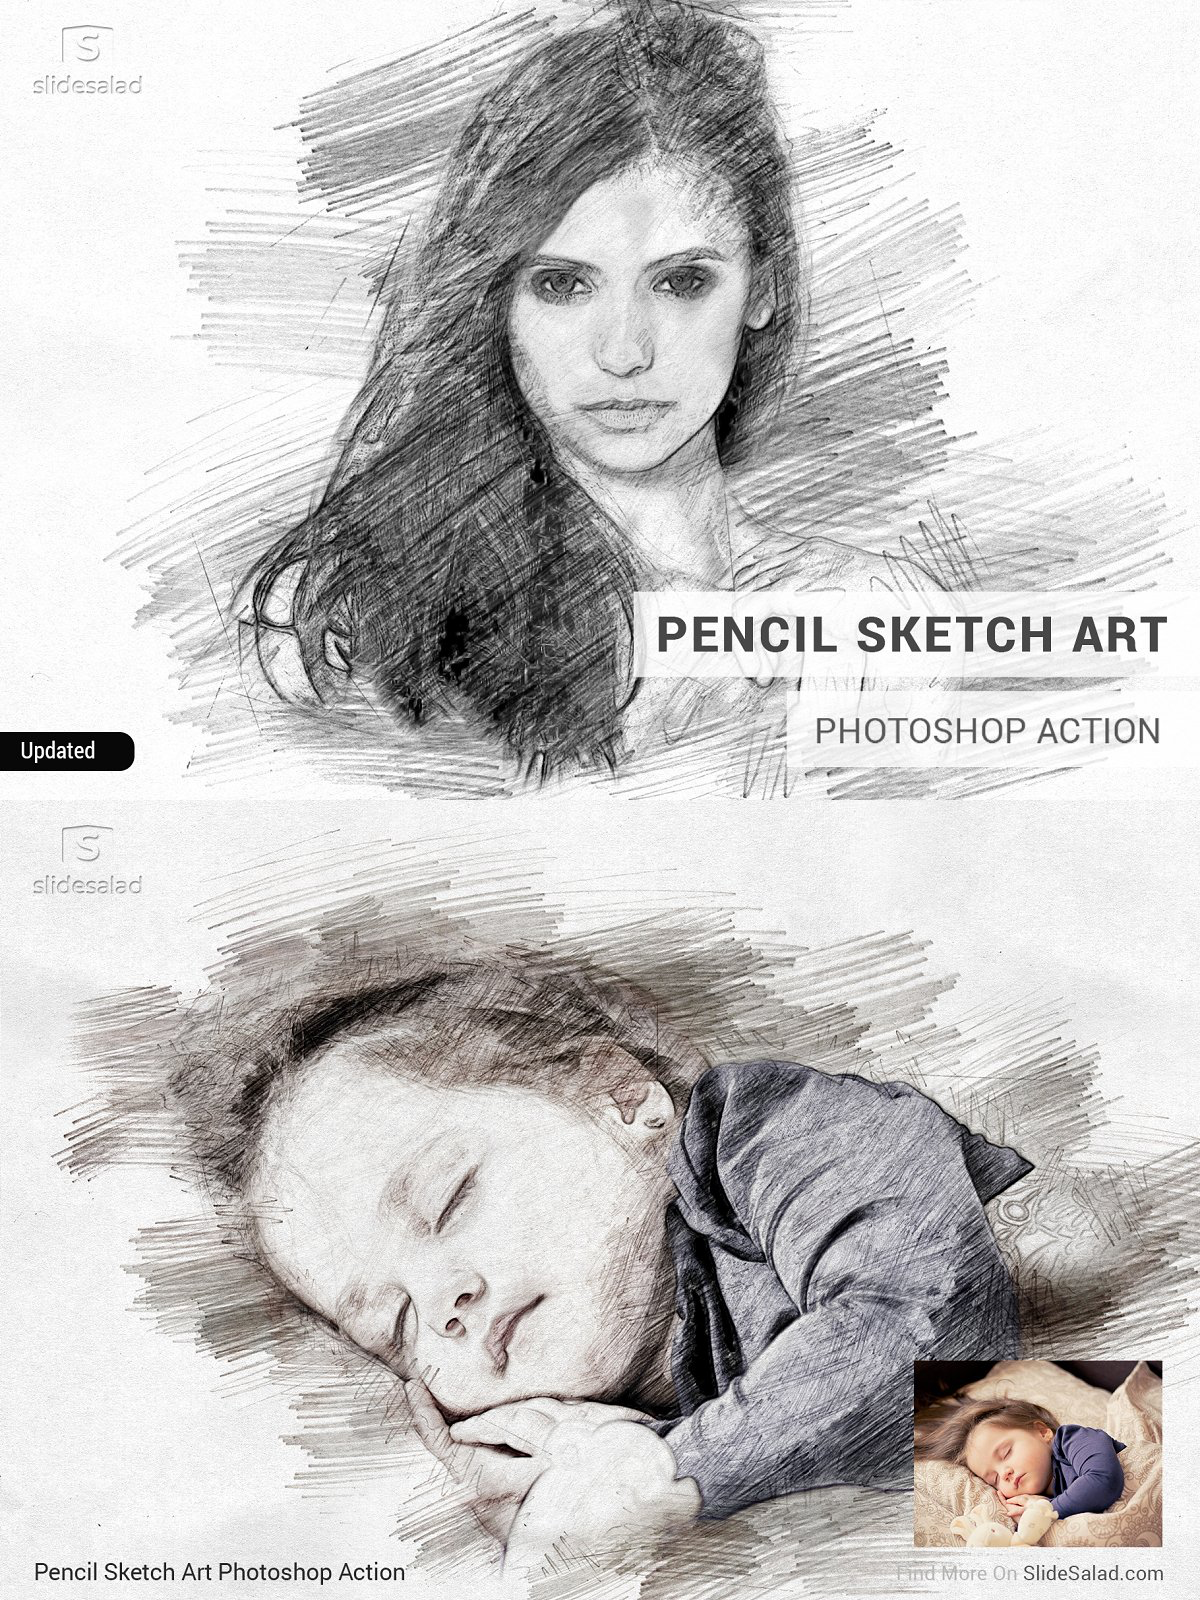 Pencil sketch art photoshop action pinterest image preview.